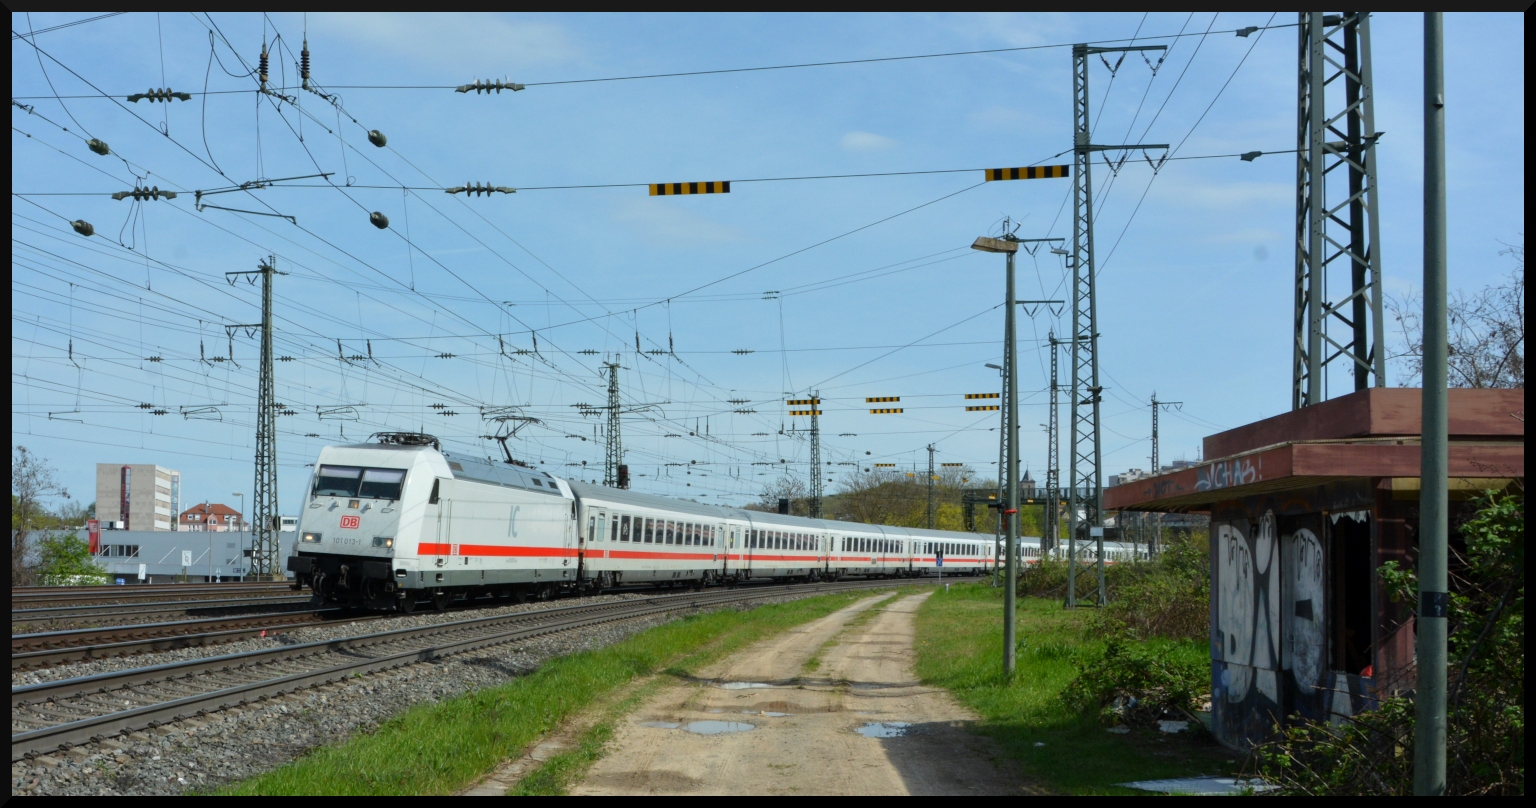  Fake-ICE : Die in ICE-Lackierung gestaltete 101 013-1 kommt mit dem IC 2082  Königssee  am 22.04.2023 in Würzburg um die Kurve. Der Zug verkehrte an diesem Tag wegen einer Streckensperrung in München rund 40 min verspätet und nur von München Pasing nach Hannover.
